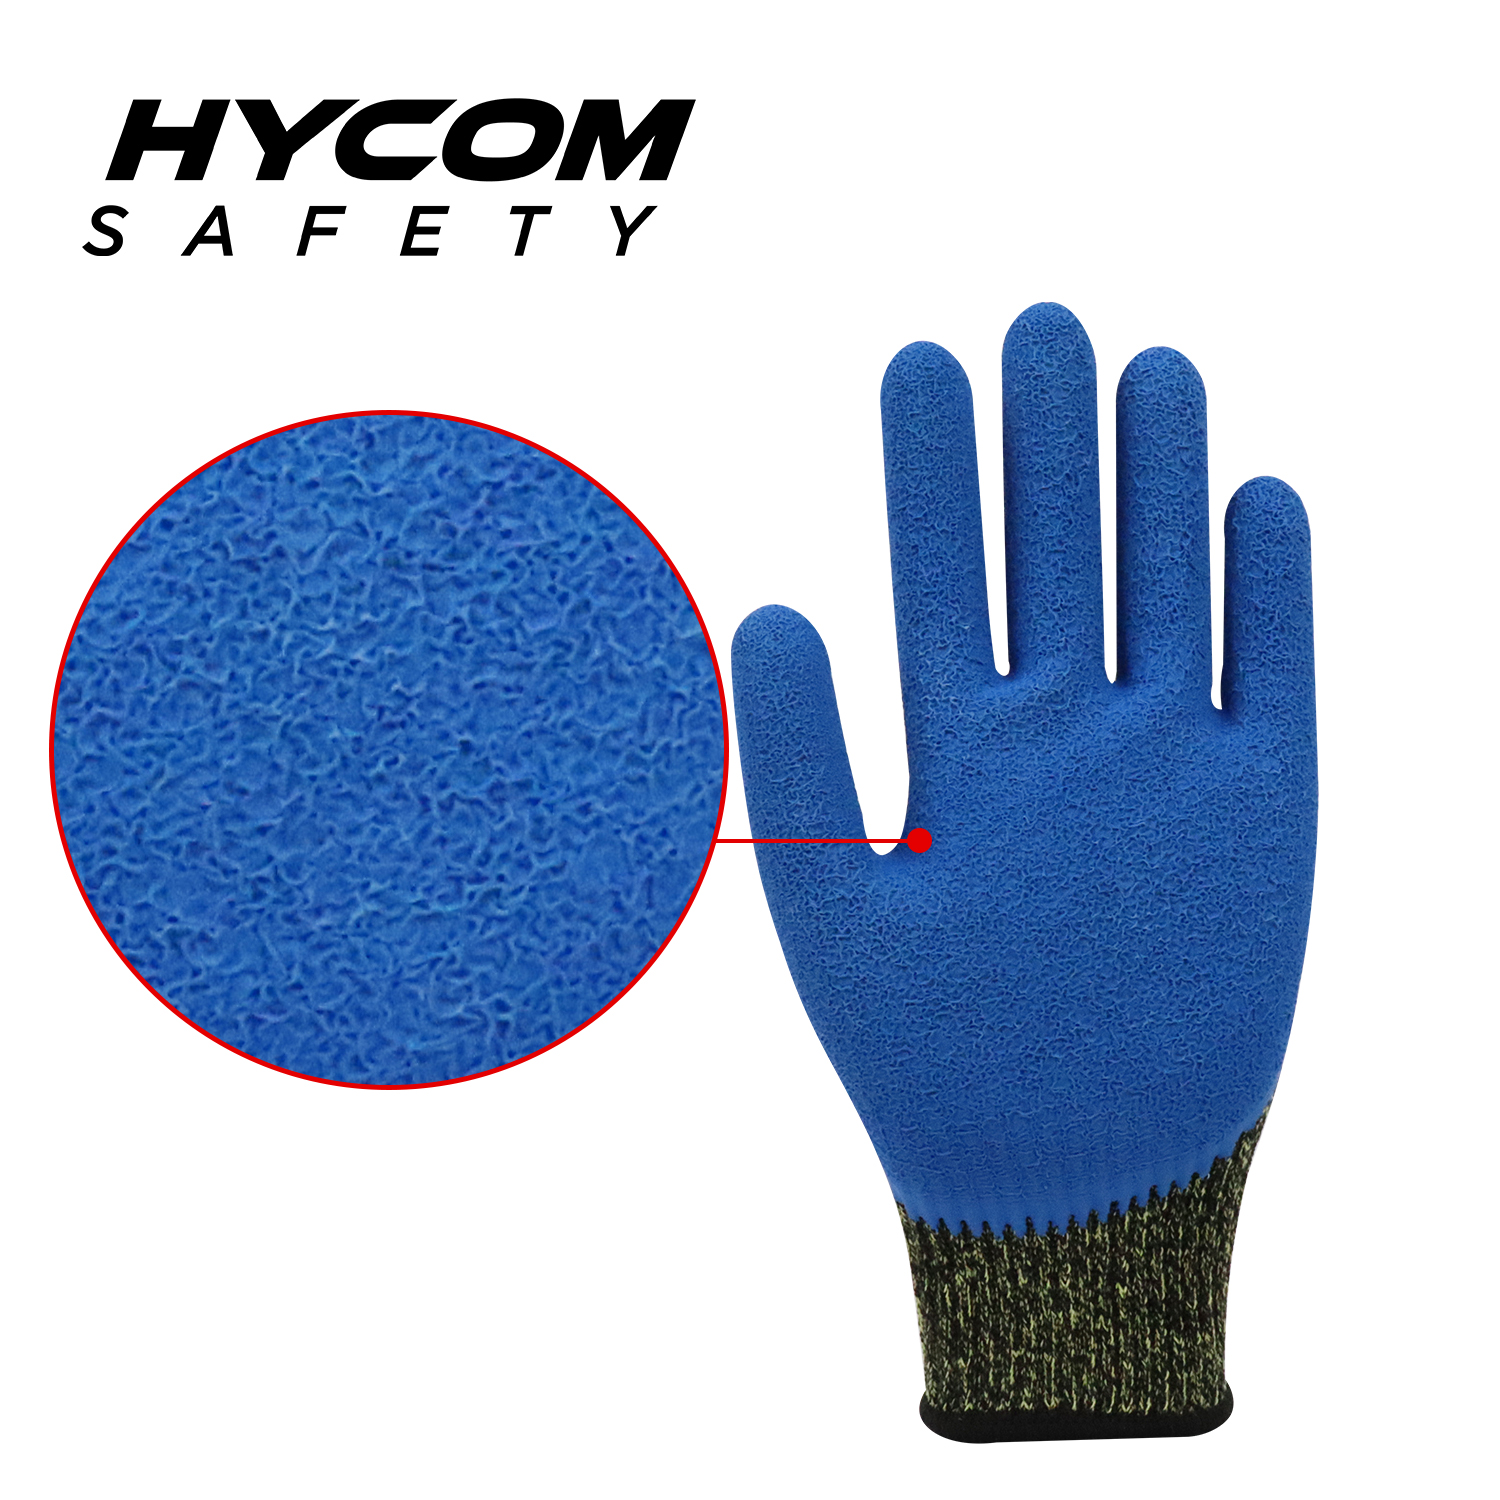 HYCOM 10G Aramid-Kontakthandschuh für hohe Temperaturen bis 250 °C/480 F, schnittfest, mit Crinkle-Latex-Handschuh